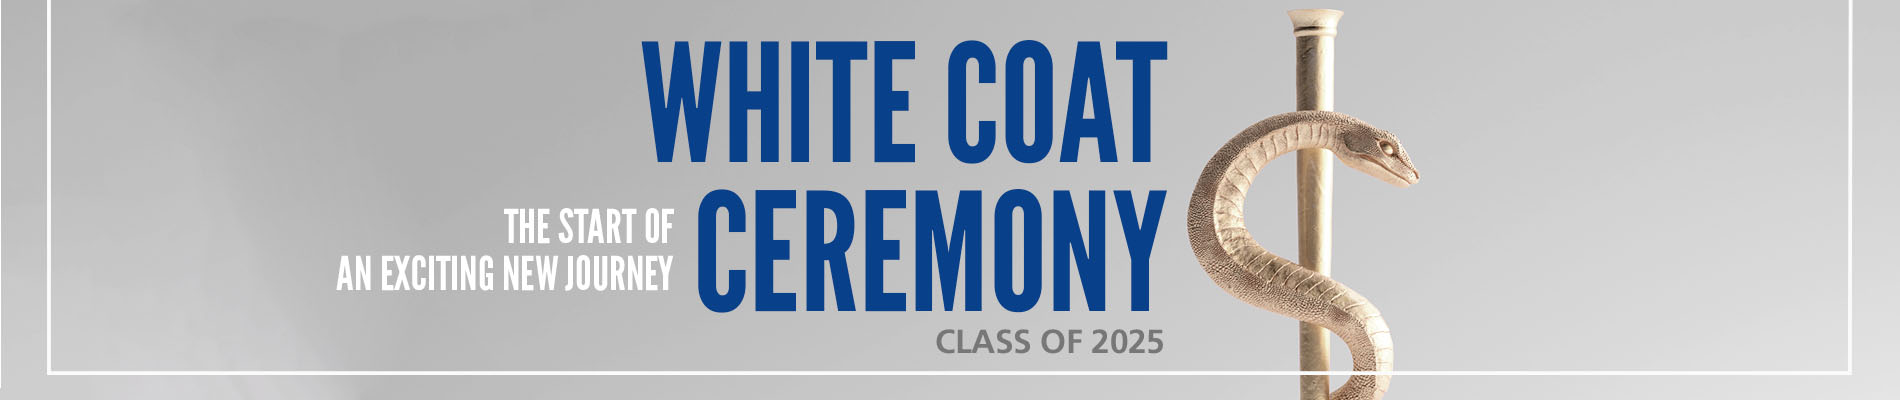 White Coat Ceremony - Class of 2025